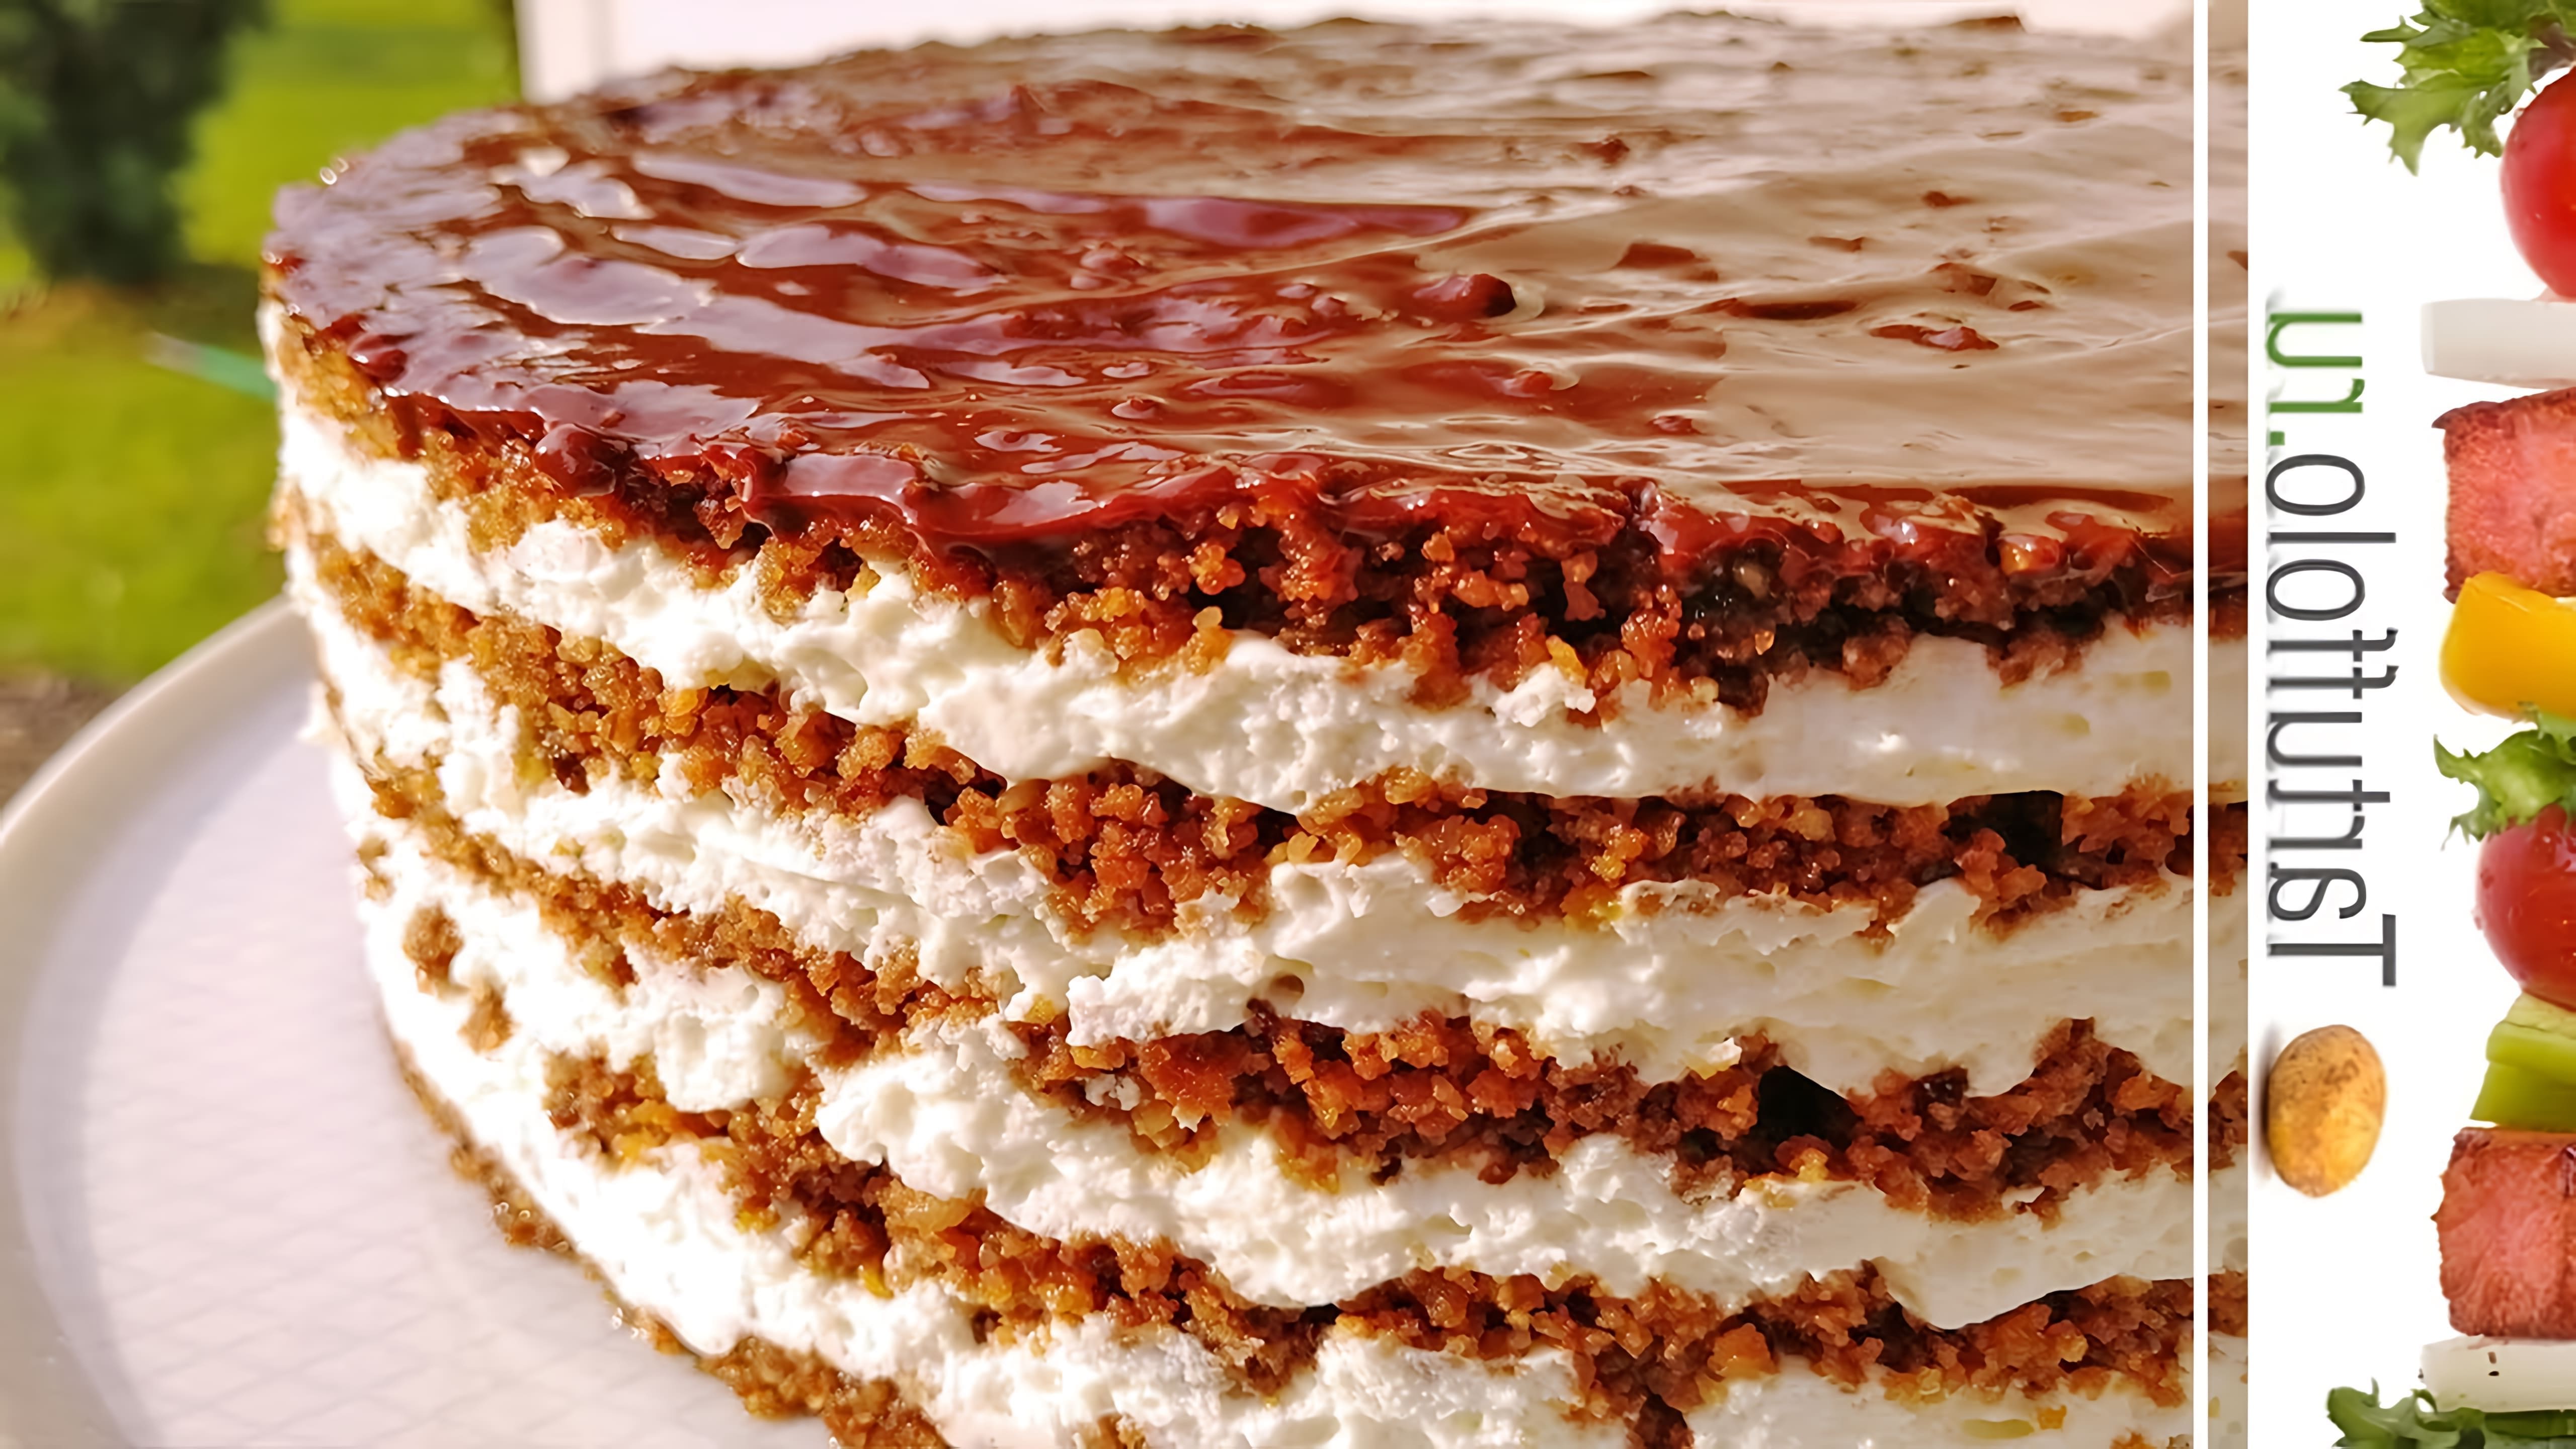 В этом видео демонстрируется рецепт приготовления торта без выпечки под названием "Тающая загадка"